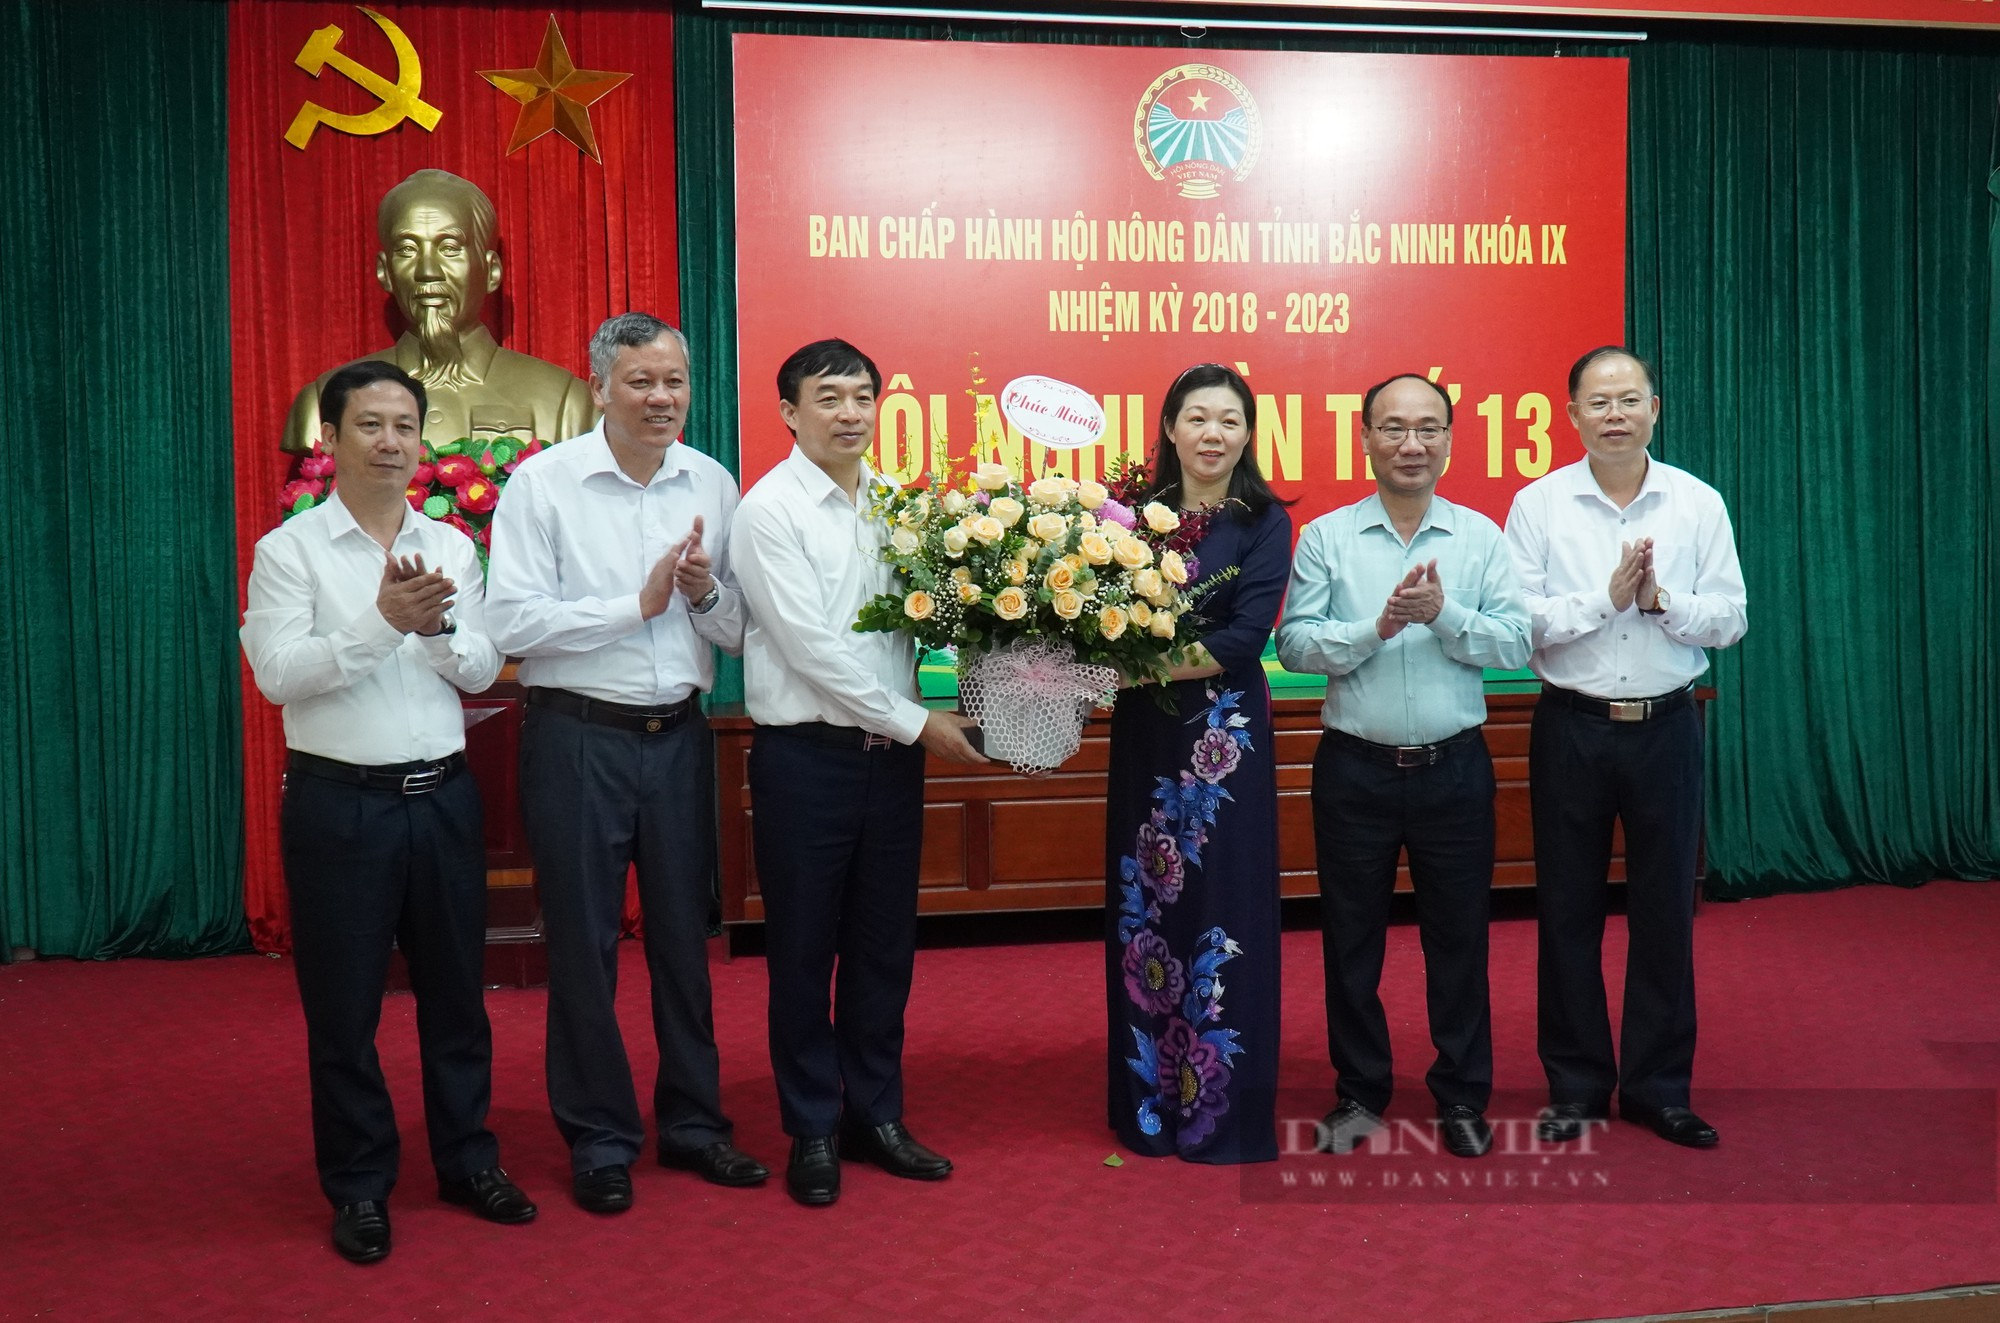 Chân dung nữ Chủ tịch Hội Nông dân tỉnh Bắc Ninh Nguyễn Thị Lệ Tuyết - Ảnh 4.